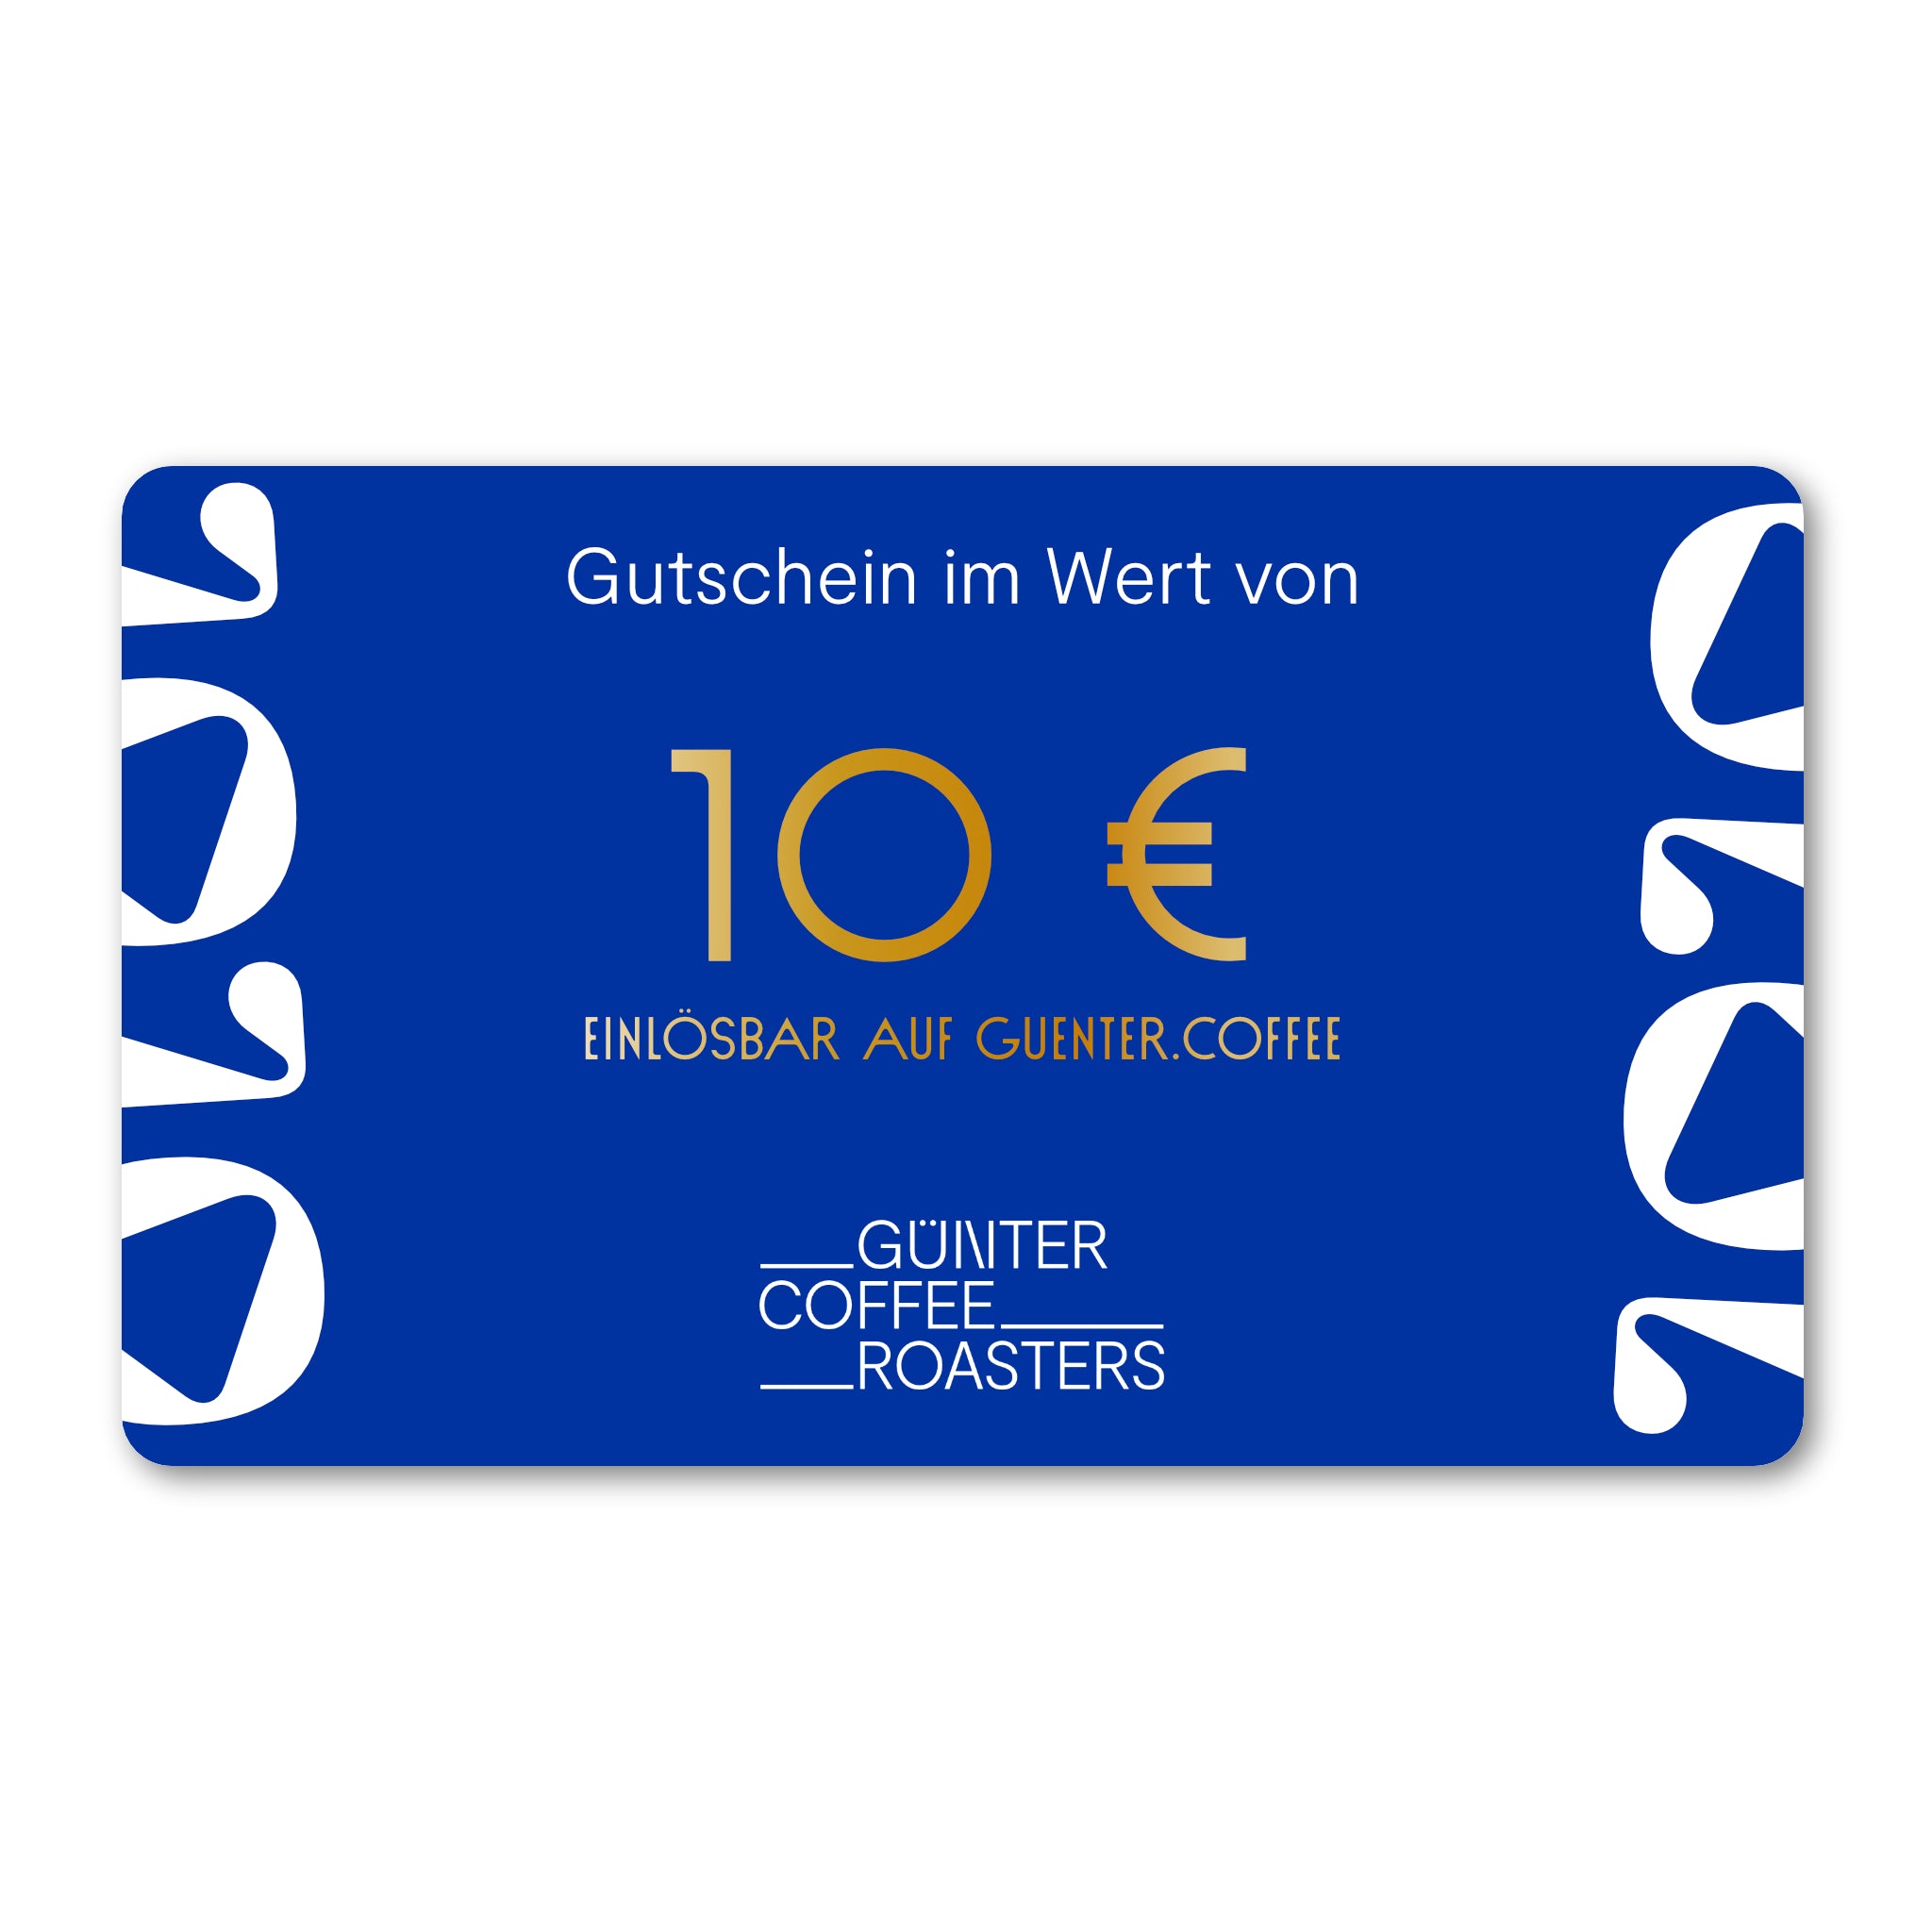 Produktbild digitaler Geschenkgutschein im Wert von 10 €.